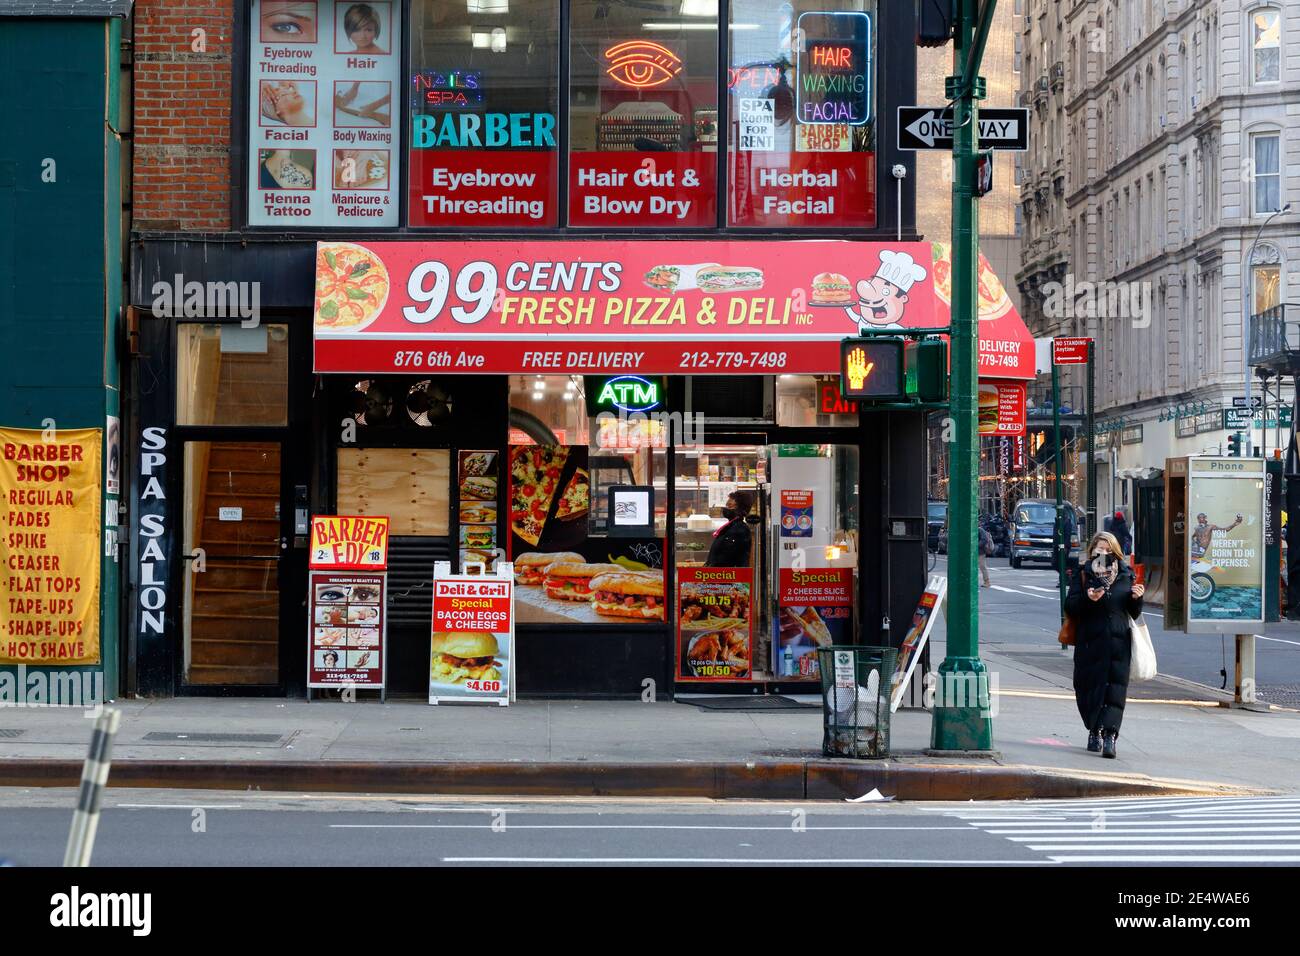 Un salon de coiffure, et 99 cents pizza épicerie deli, 876 6th Ave, New York, NY. Banque D'Images